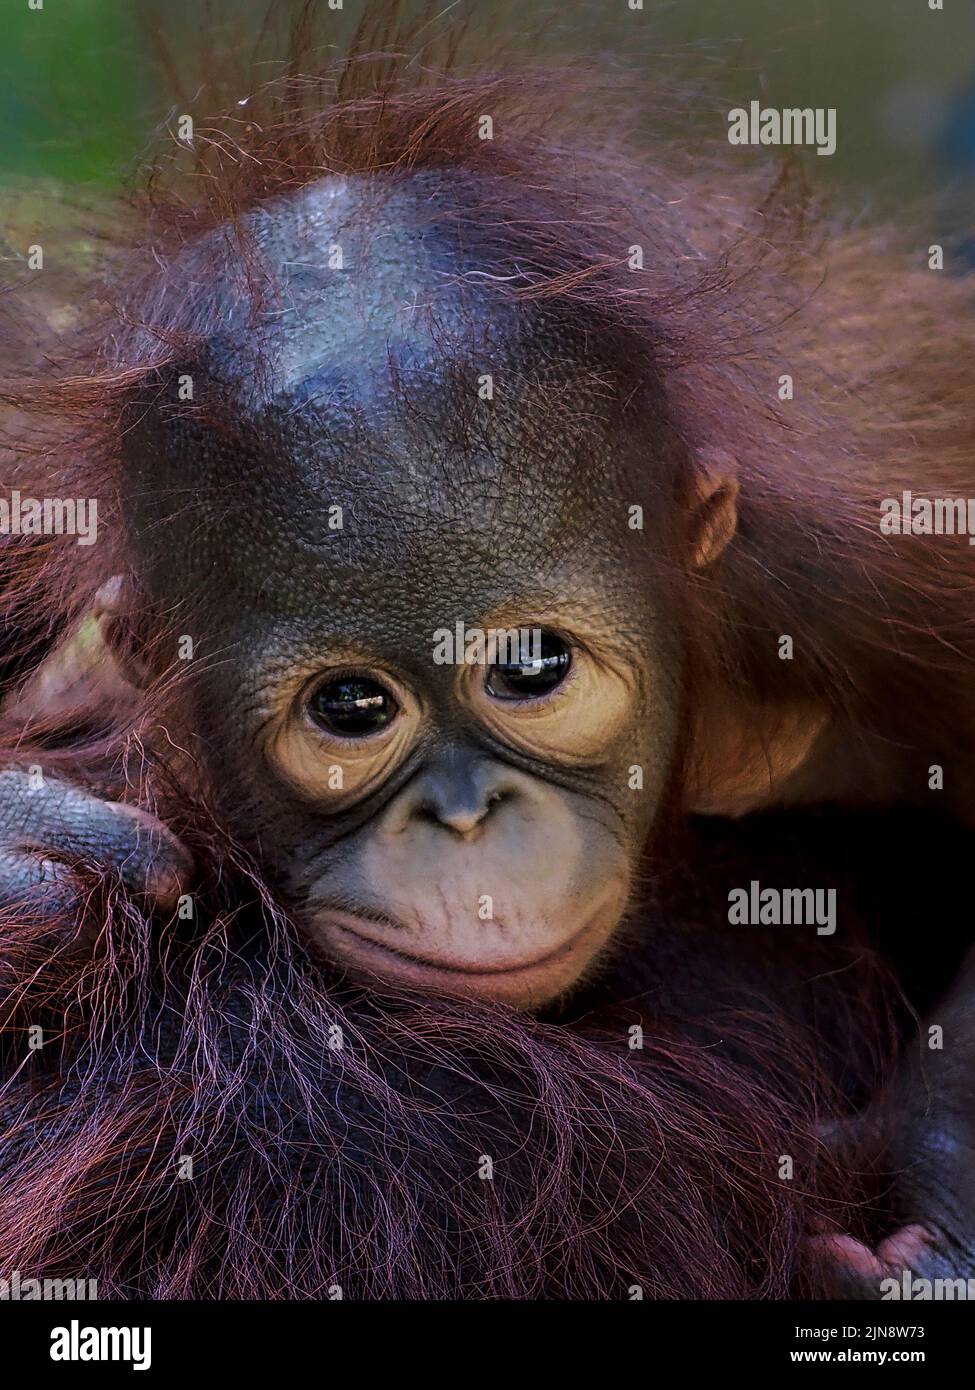 Dieses Baby pout für die Kamera. Jakarta, Indonesien: DIESE KOMISCHEN Bilder zeigen ein entzückendes Baby-Orang-Utan, das bei diesem Glück Gesichter zieht? Und erfreut ? Stockfoto